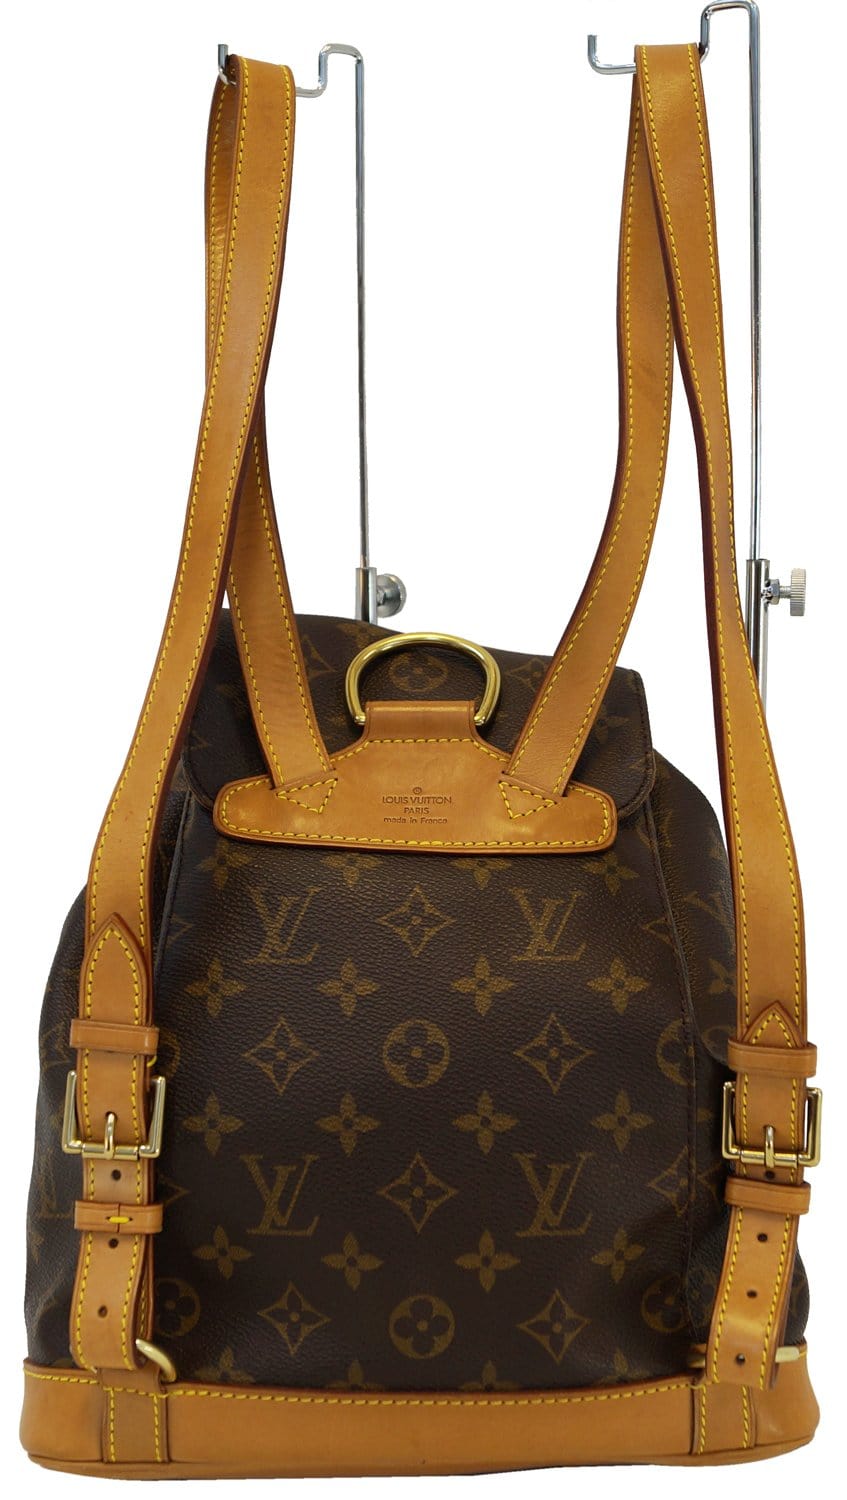 Louis Vuitton, Bags, Authentic Louis Vuitton Backpack Bag Montsouris Gm  Monogram Used Lv Handbag Vint